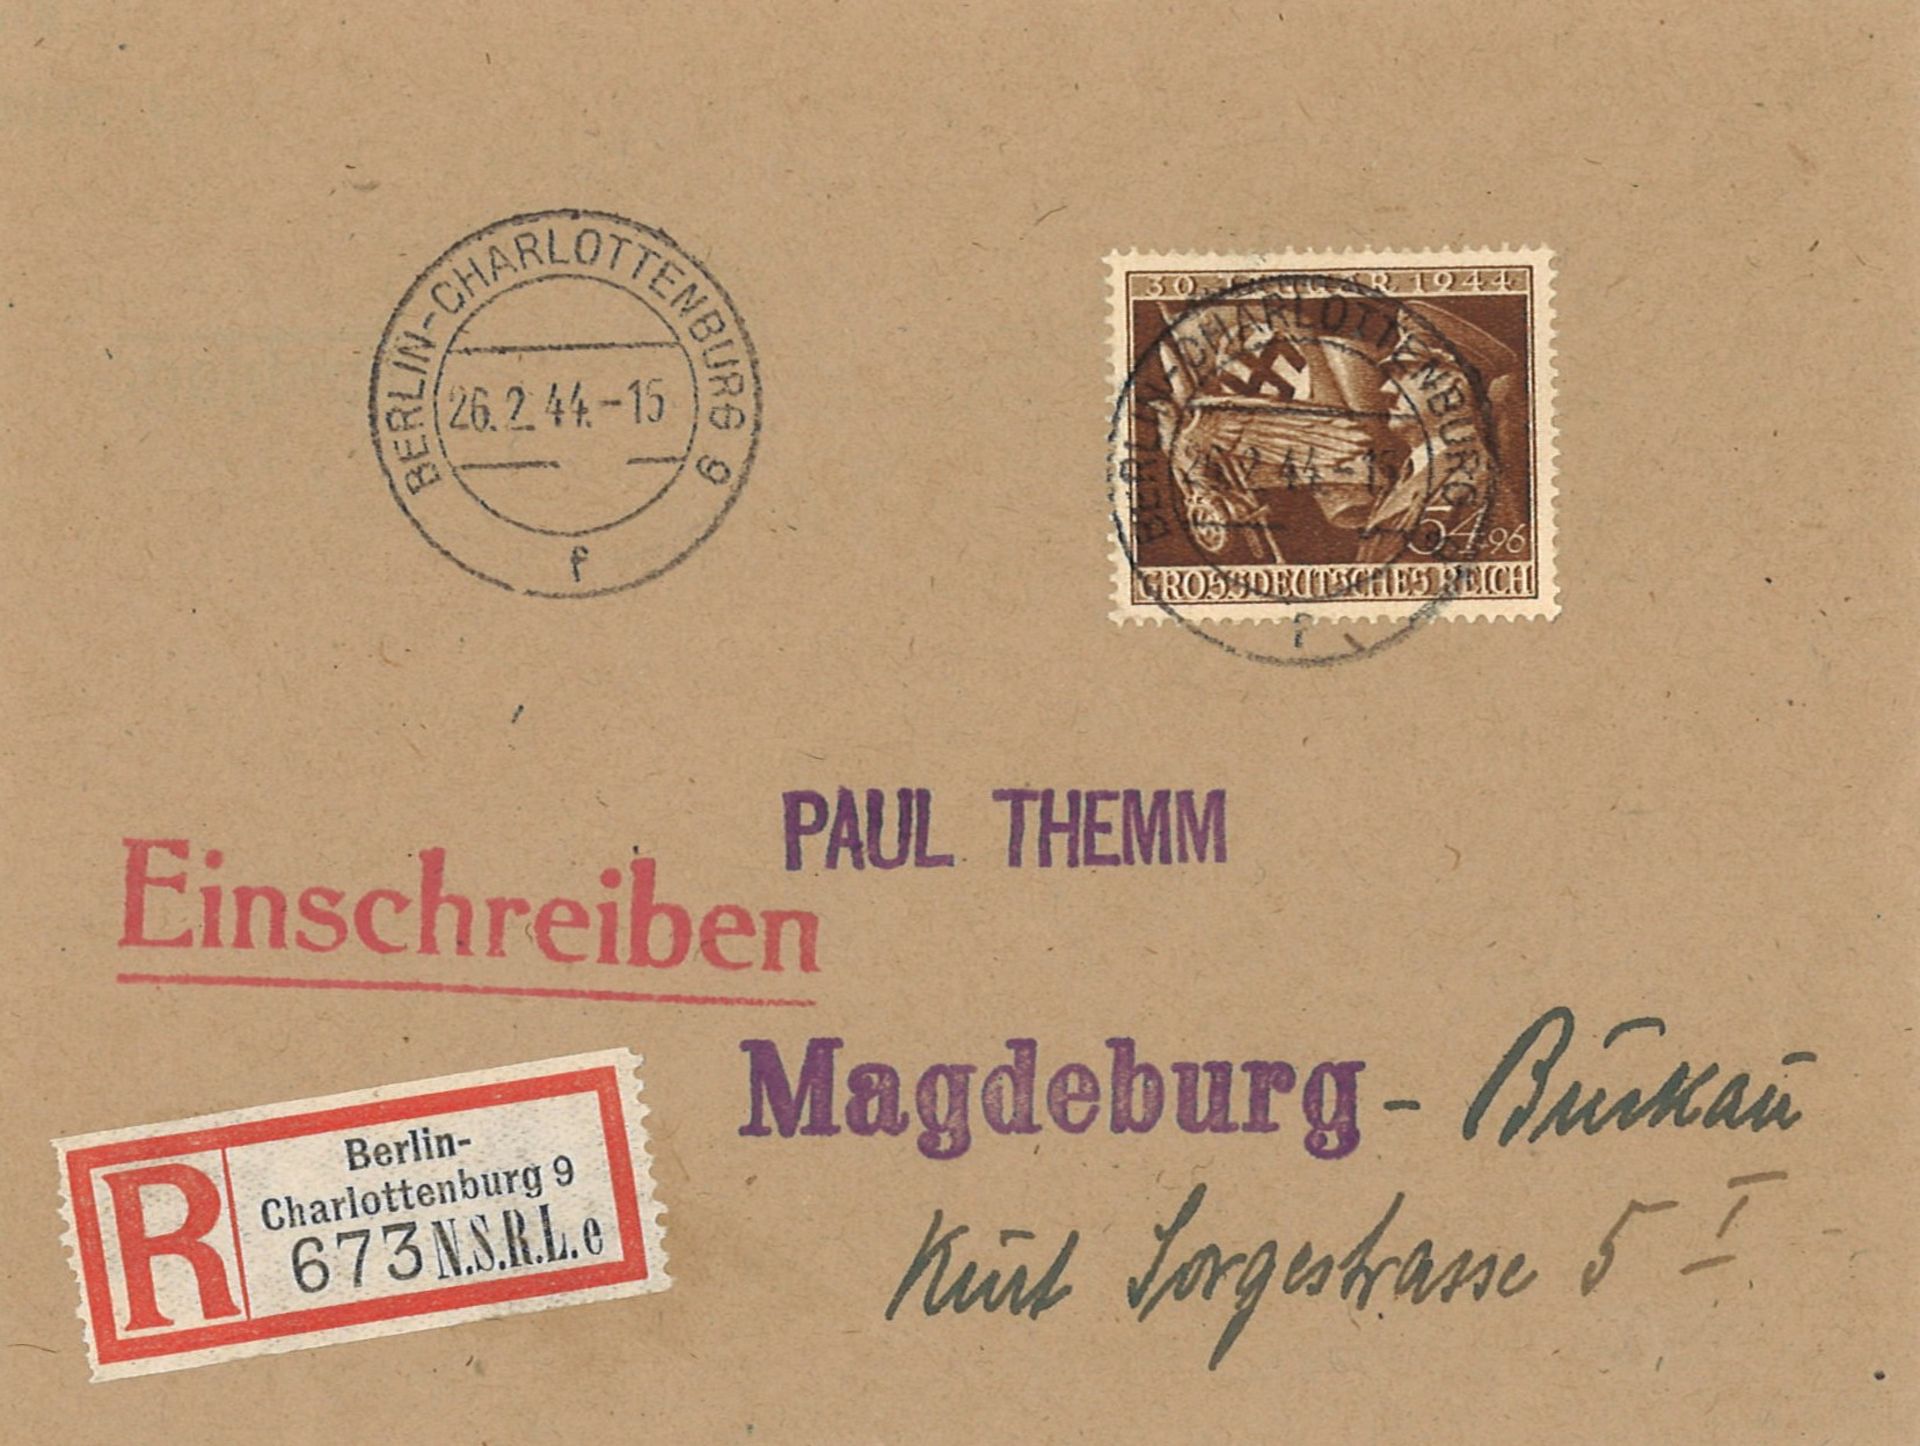 Deutsches Reich, r - Brief Berlin - Charlottenburg 9 N.S.R.L.e (National Sozialistischer